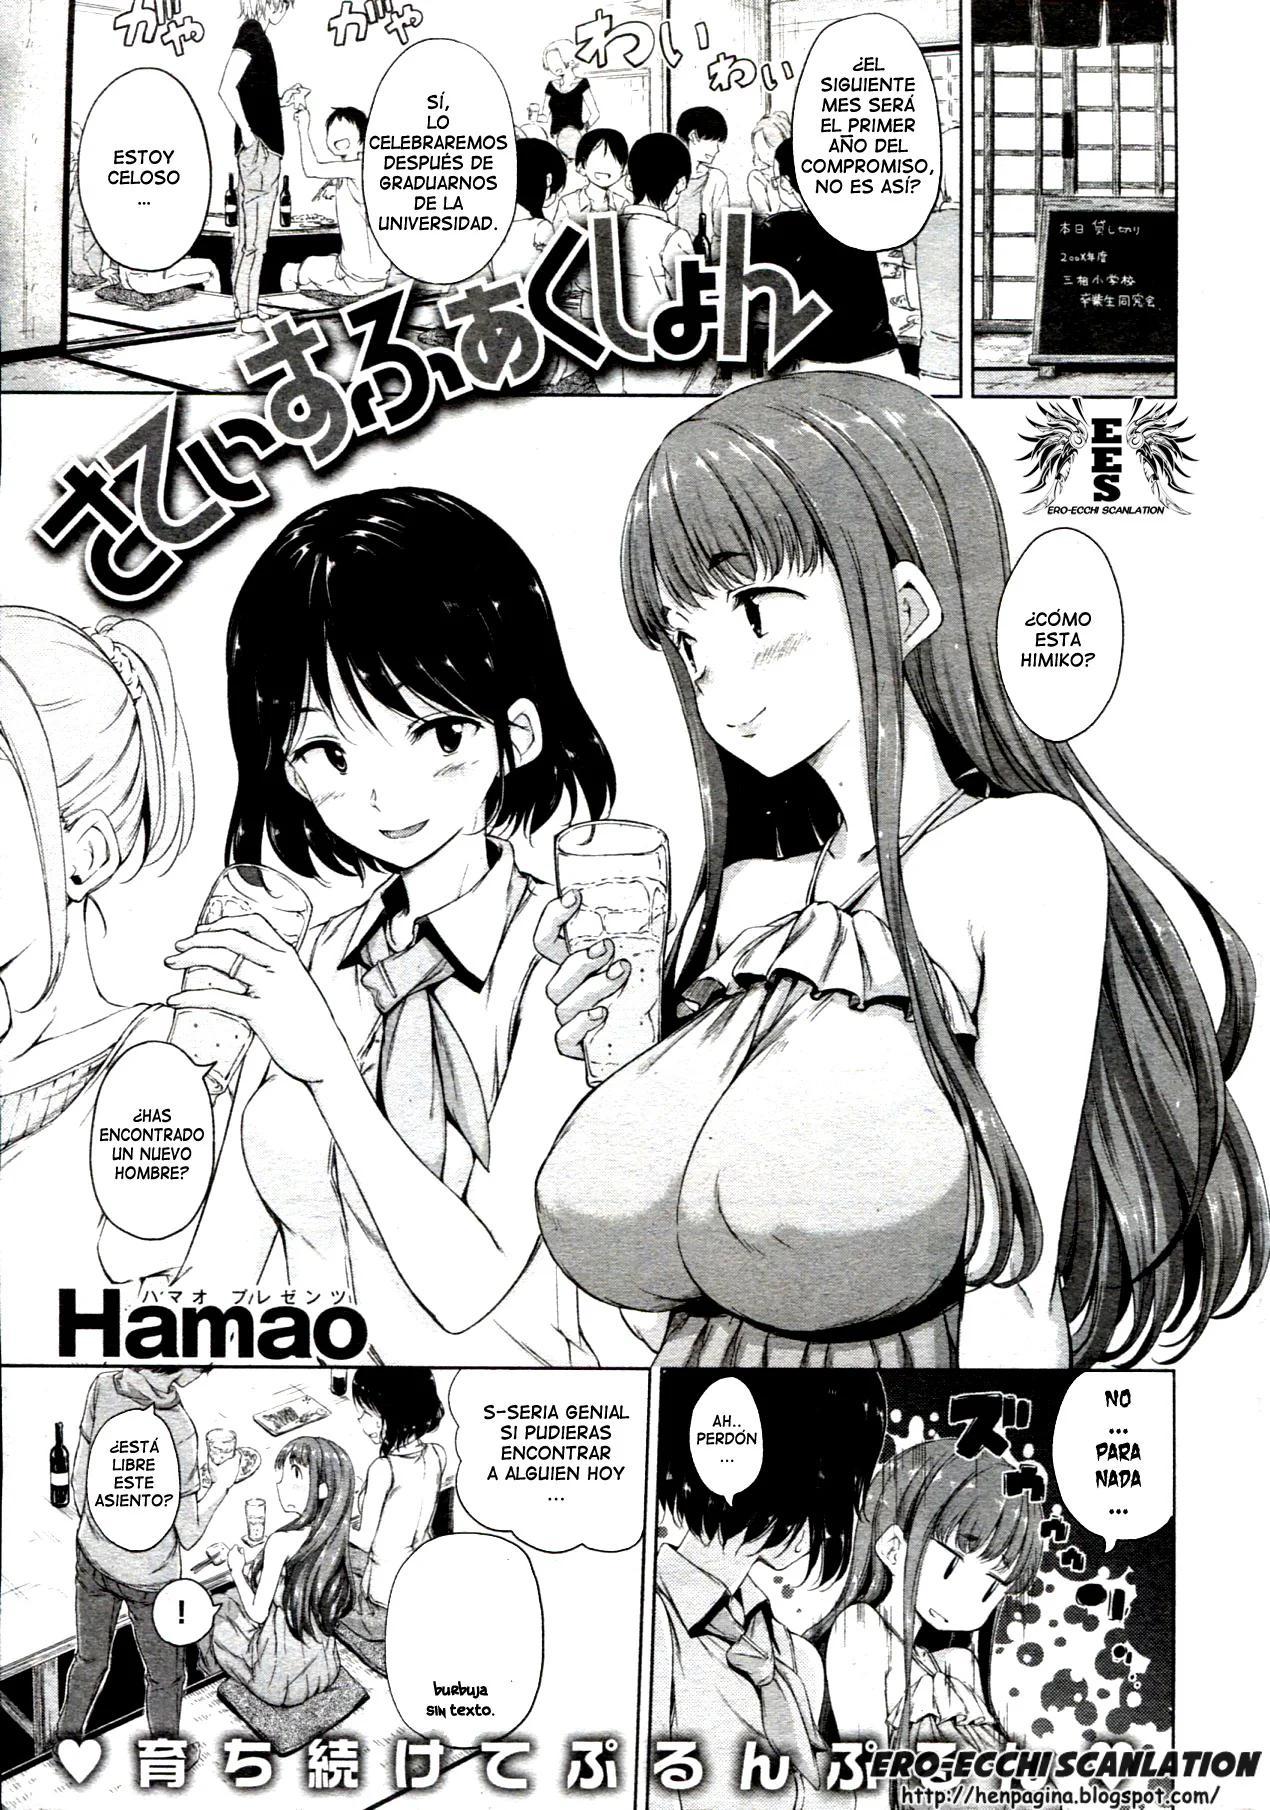 Hamao - Satisfaccion - 0